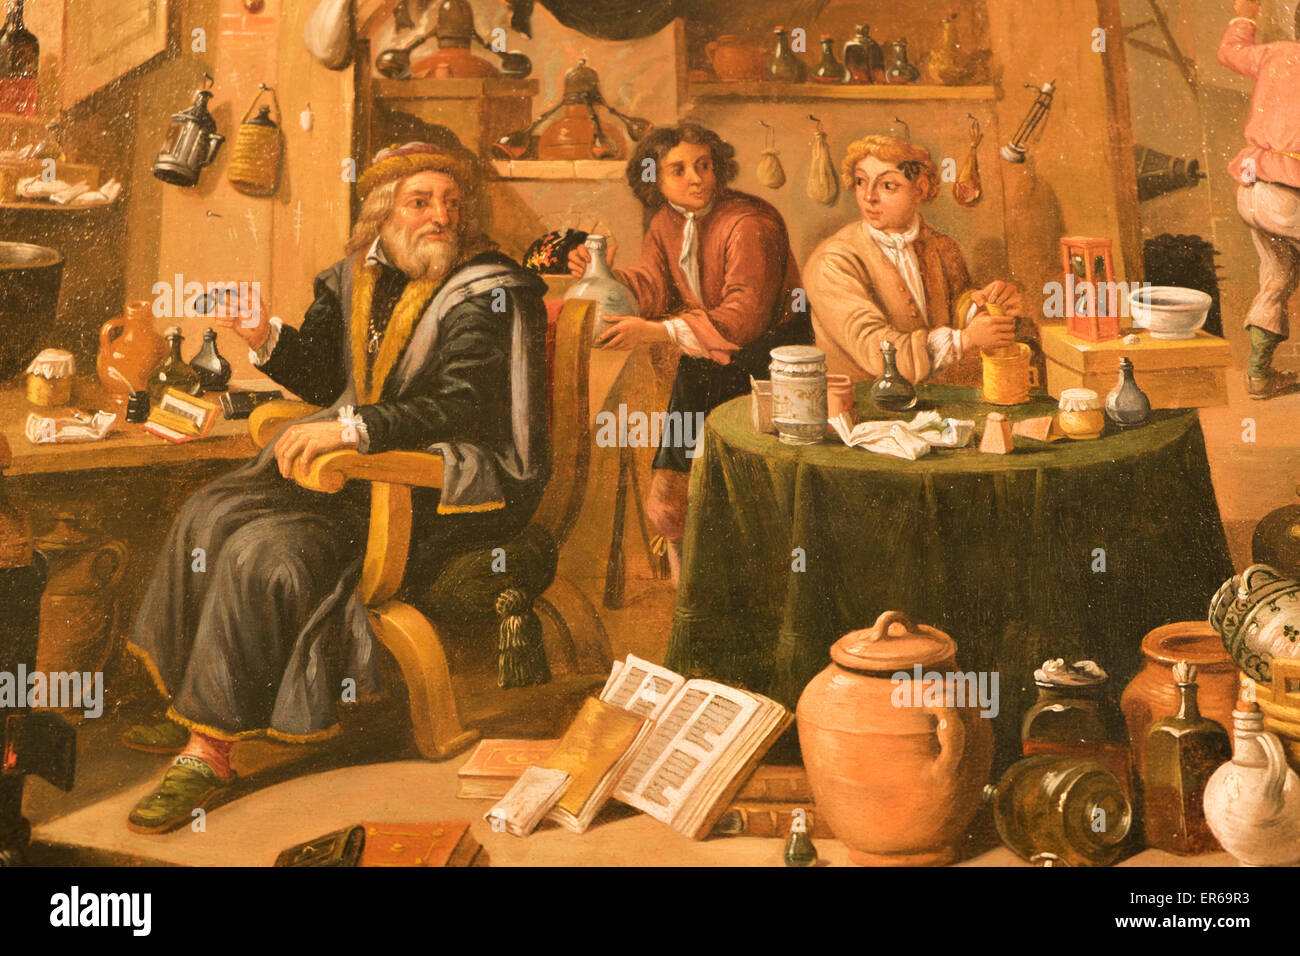 England, London, The Wellcome Collection, The Reading Room, 17. Jahrhundert Gemälde mit dem Titel "ein Alchemist in seinem Labor" Stockfoto